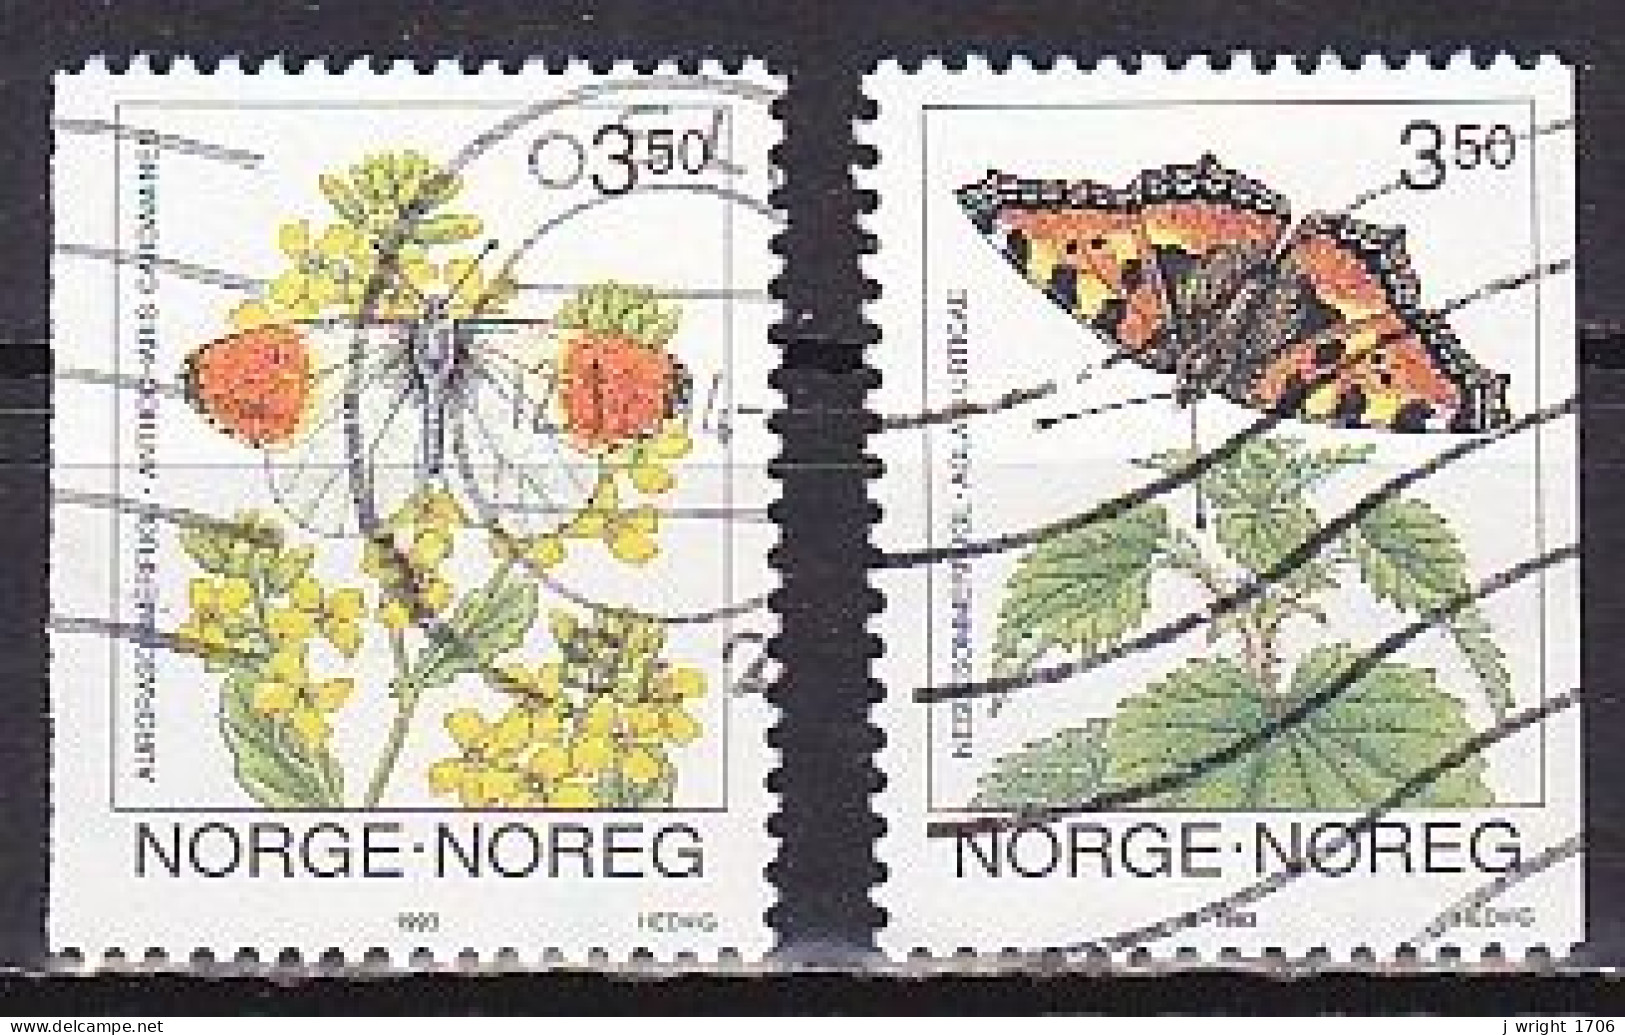 Norway, 1993, Butterflies, Set, USED - Gebraucht